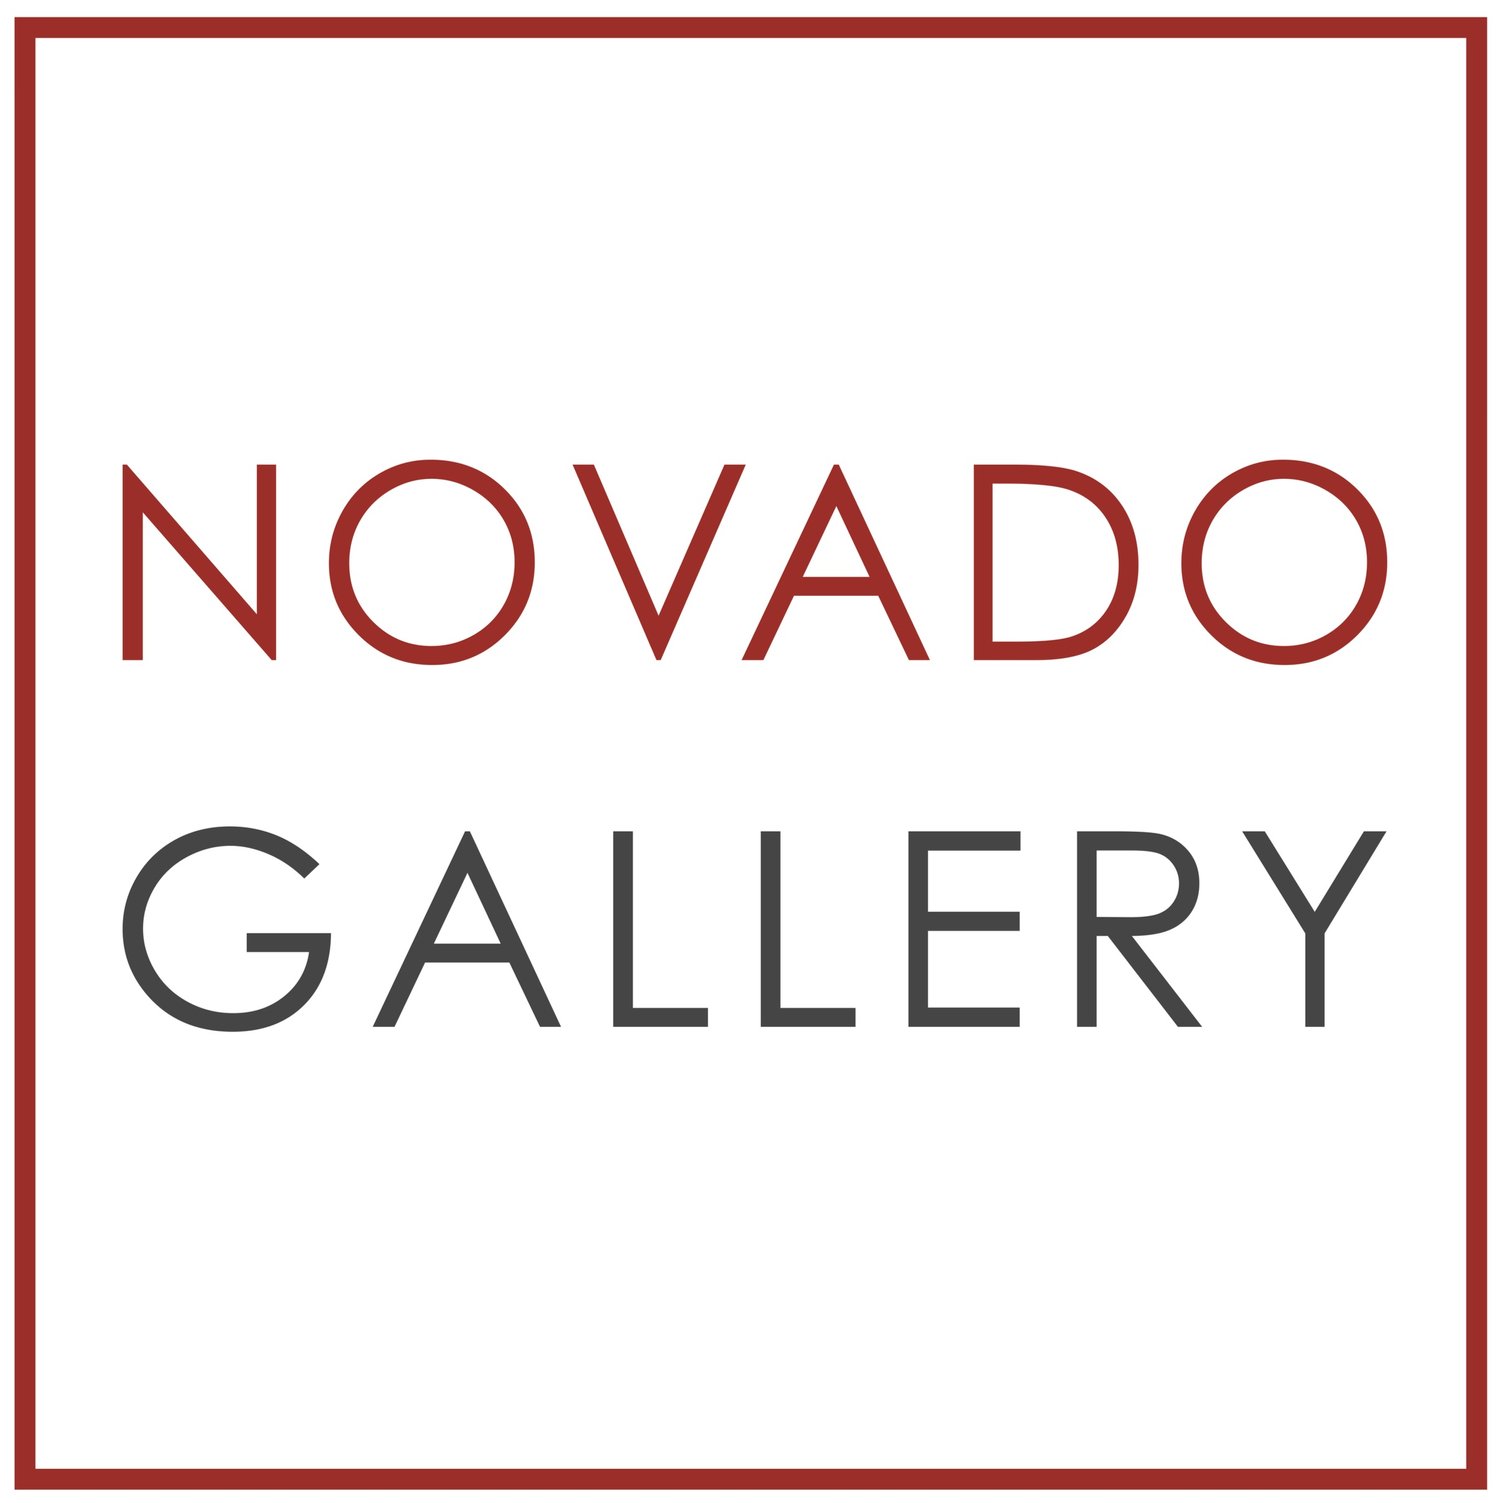 NOVADO GALLERY